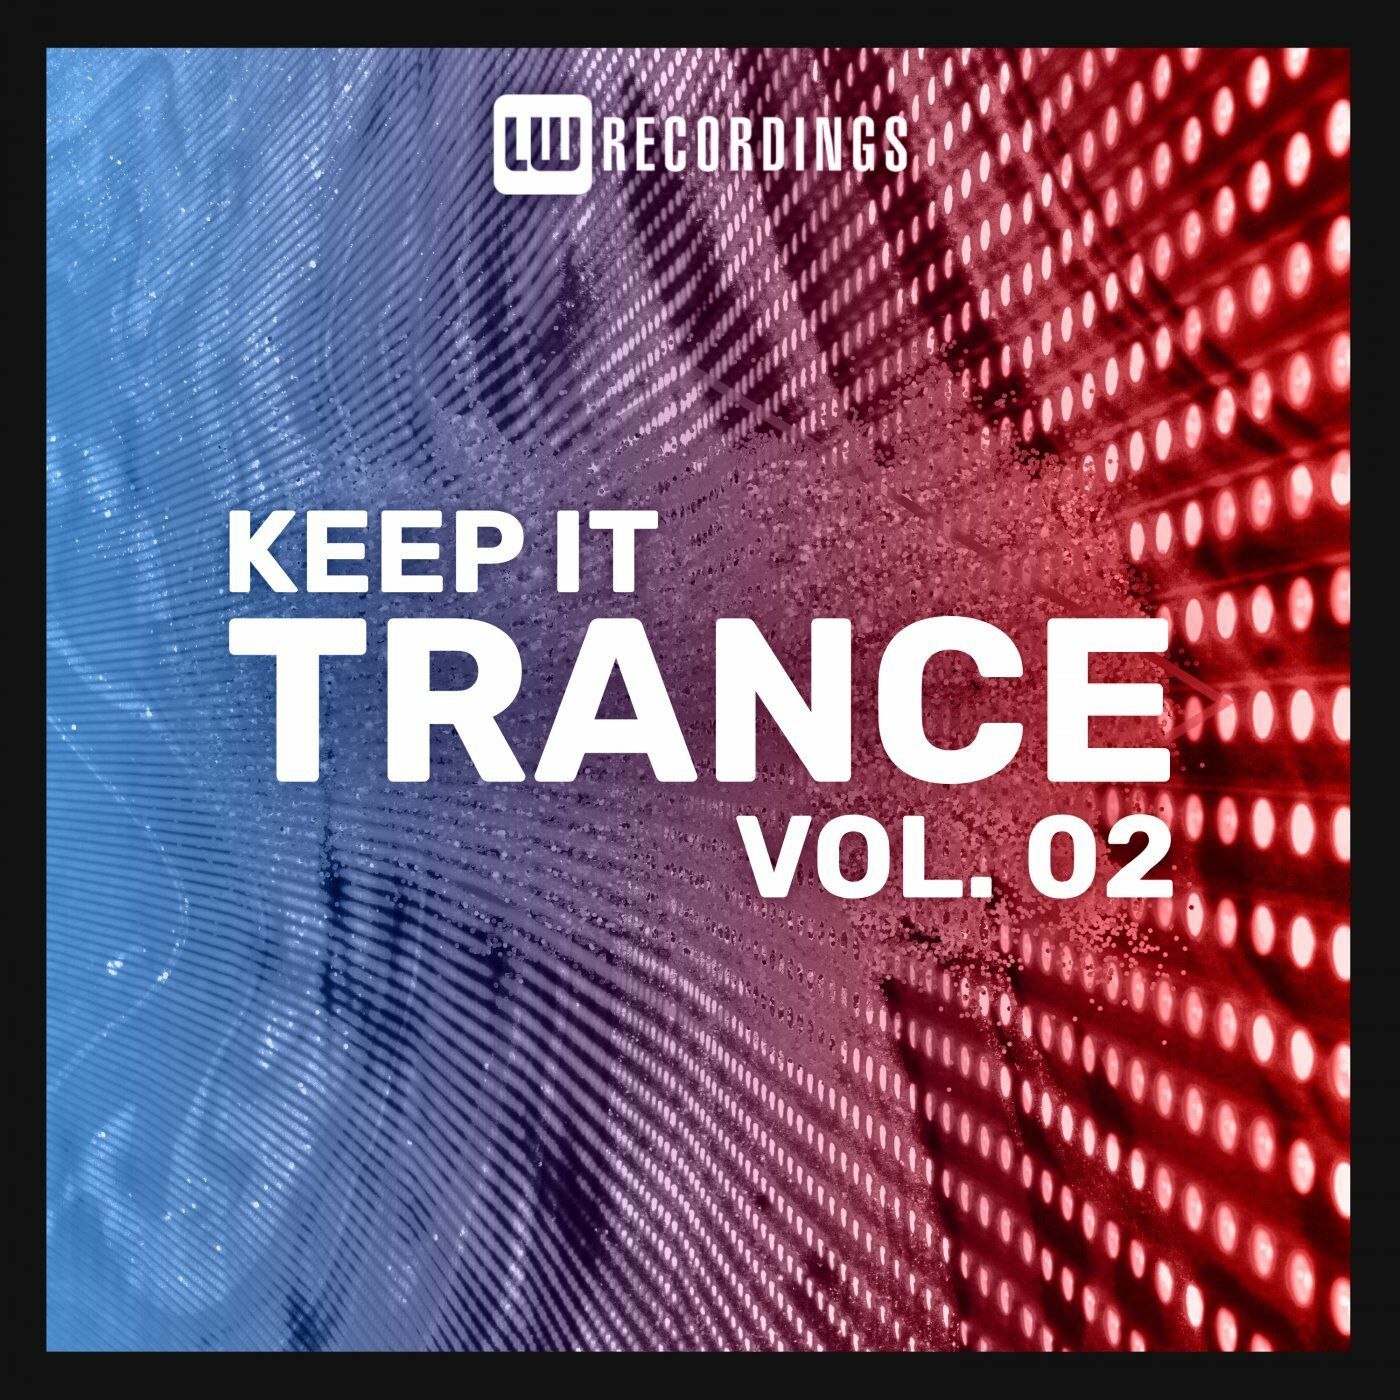 Keep It Trance Vol. 02 MP3 320Kbits